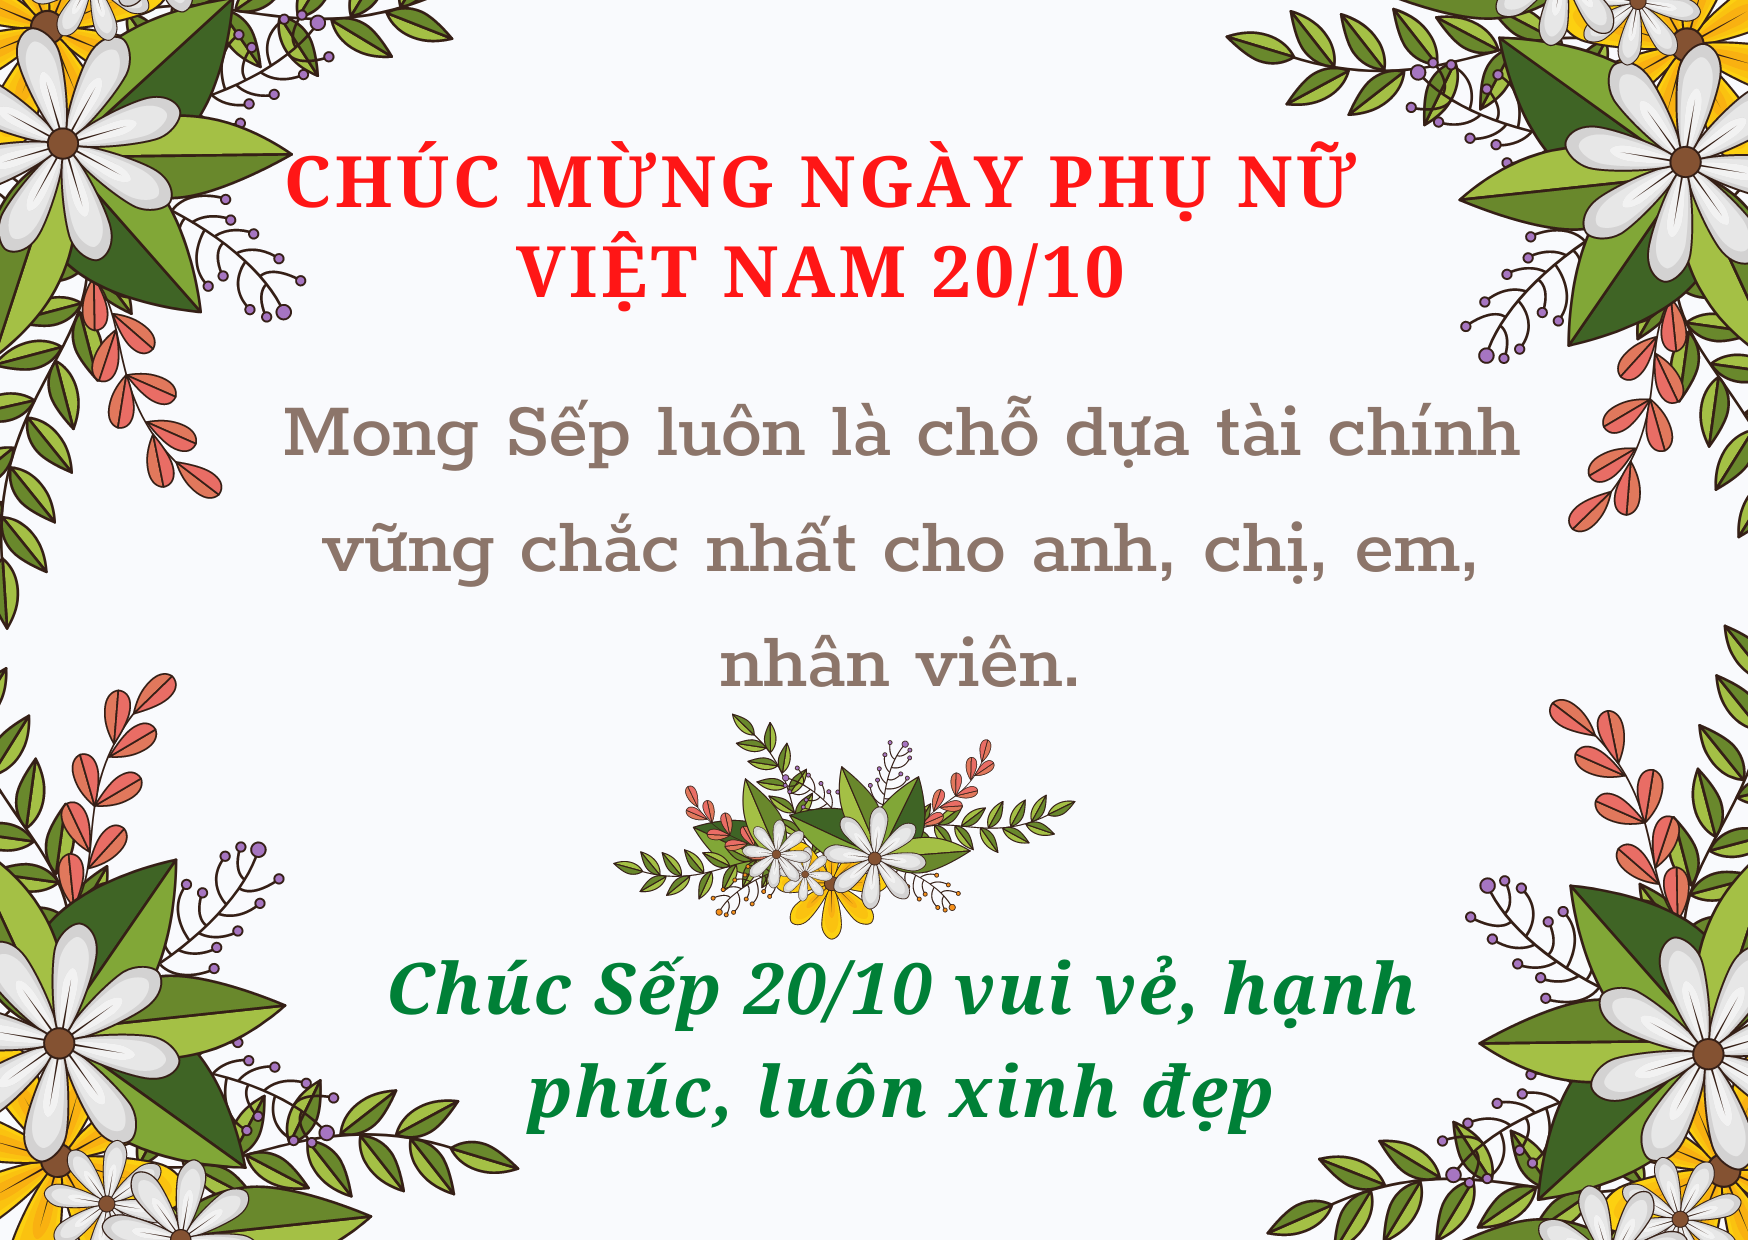 Chúc mừng ngày phụ nữ Việt Nam 20/10! Hân hoan cùng những lời chúc tốt đẹp nhất, hãy nhấp chuột vào ảnh để cùng chia sẻ hạnh phúc và yêu thương đến các chị em phụ nữ.